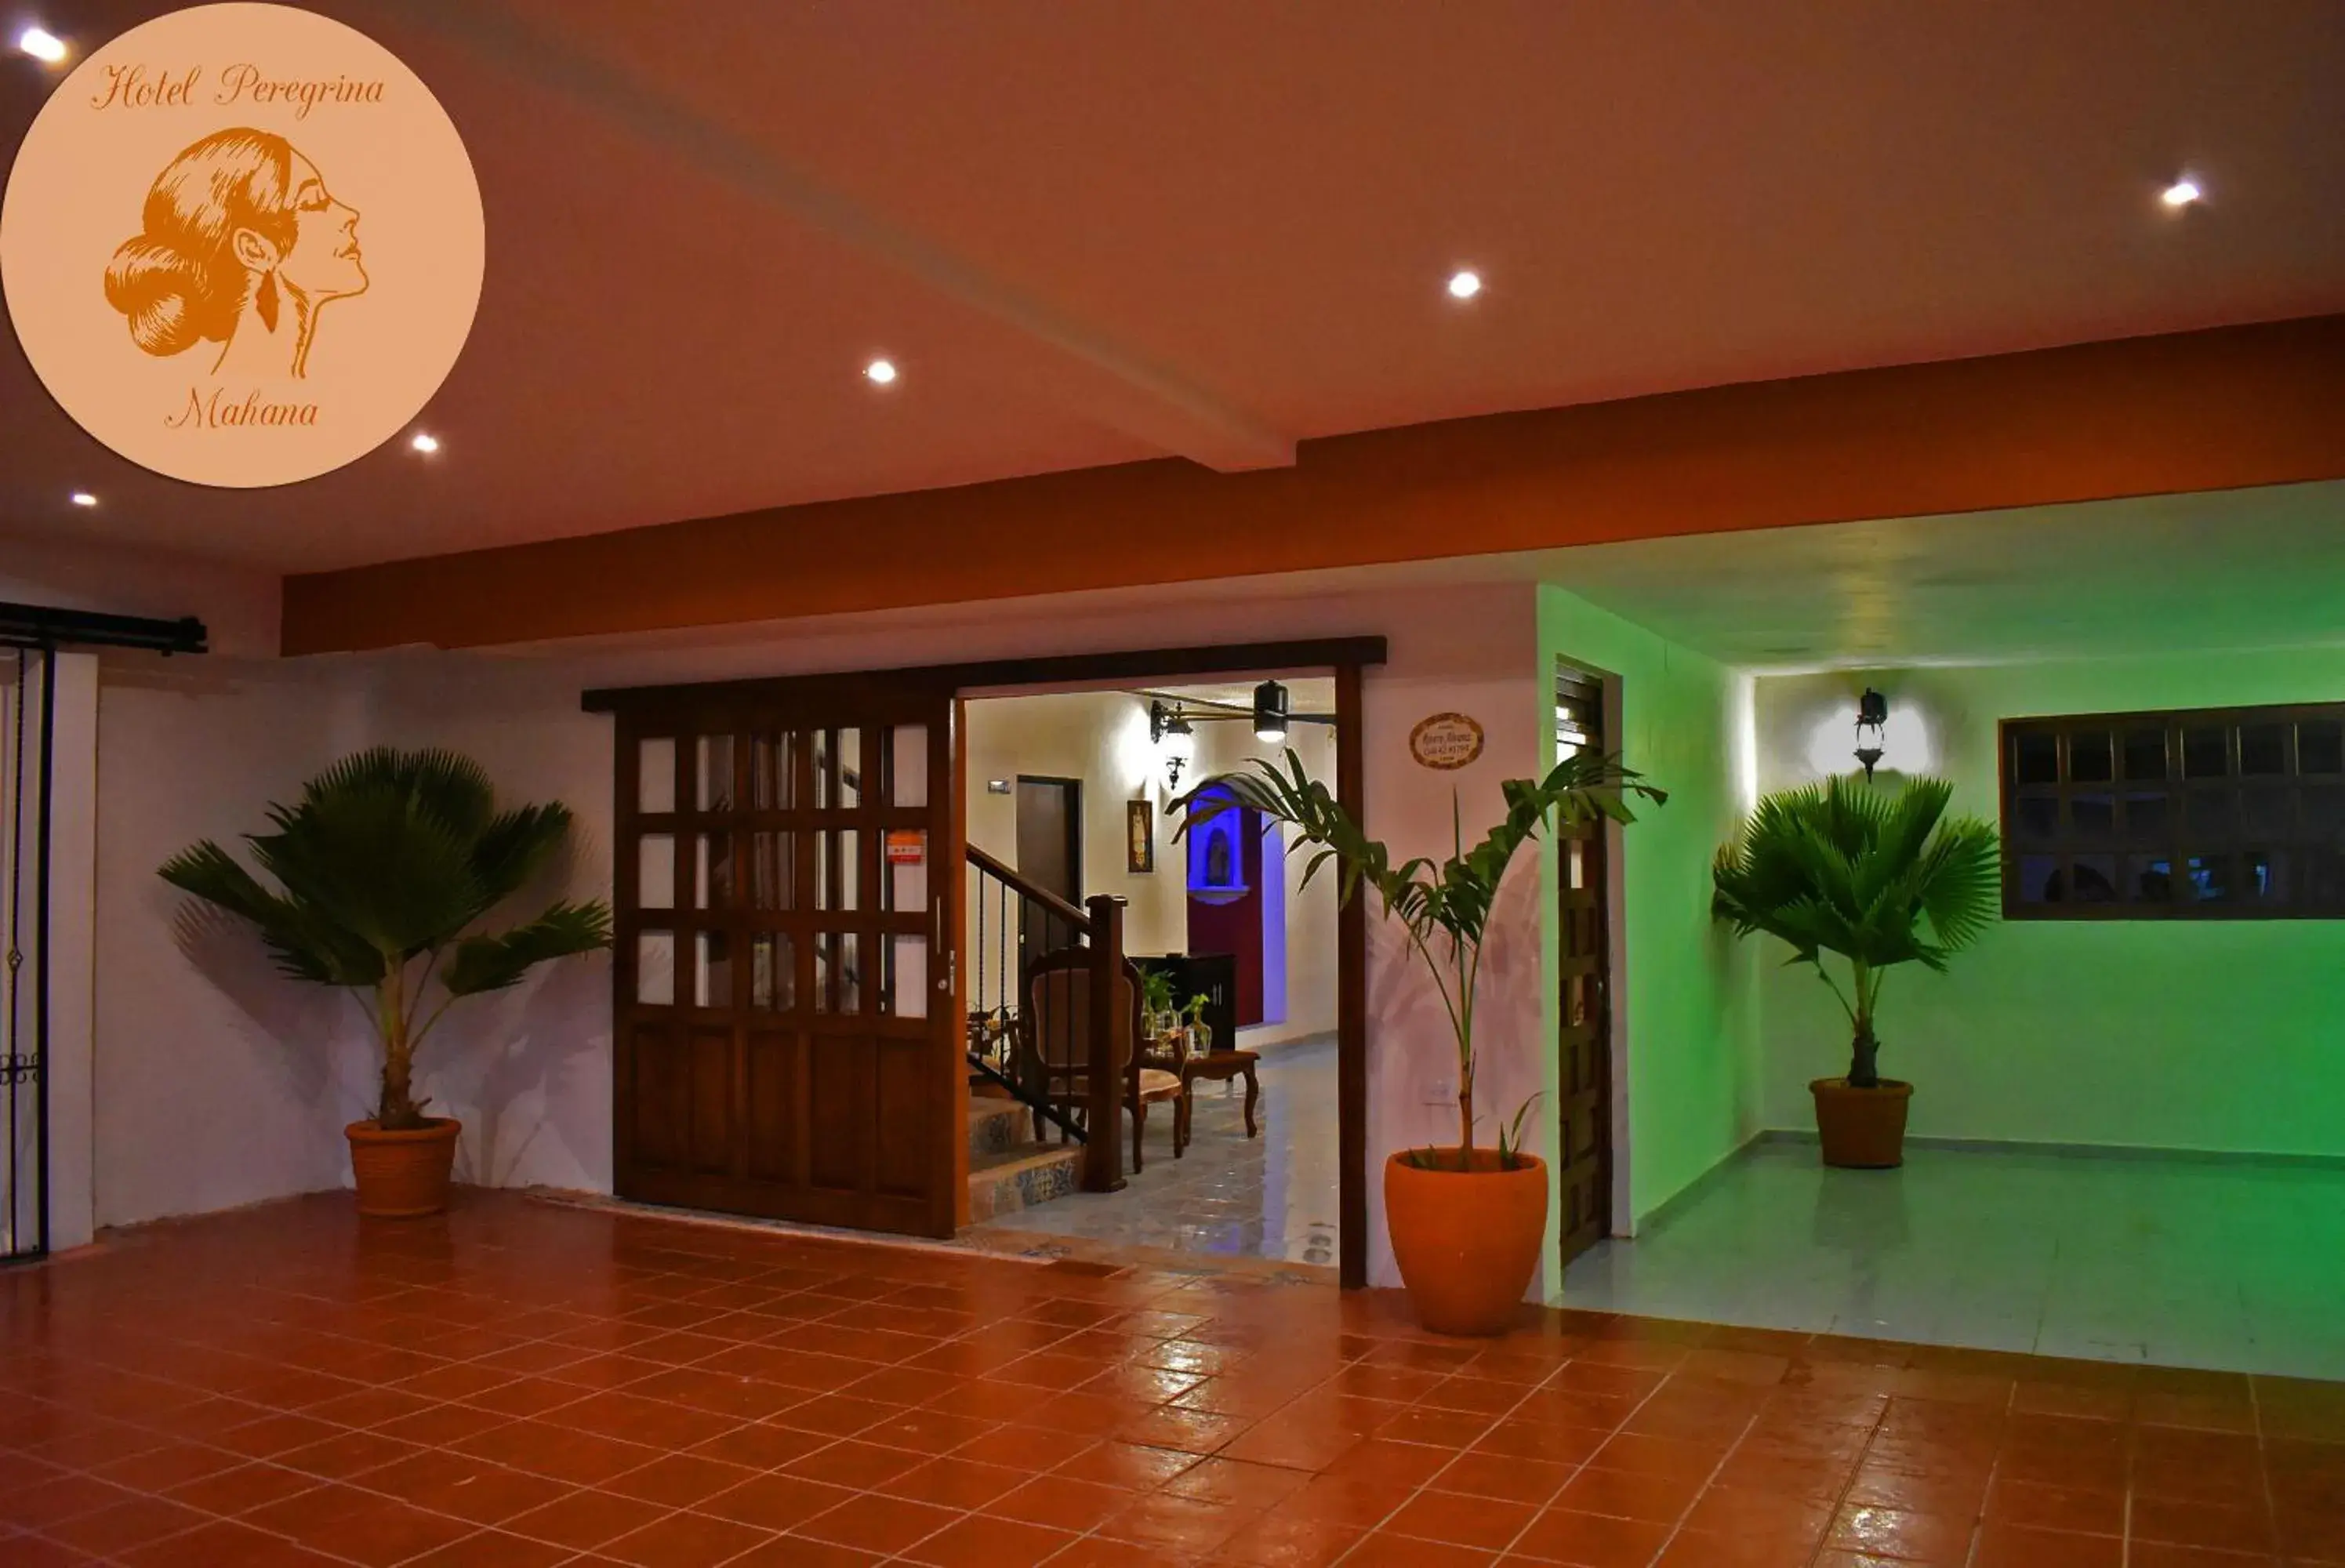 Lobby or reception, Lobby/Reception in hotel peregrina